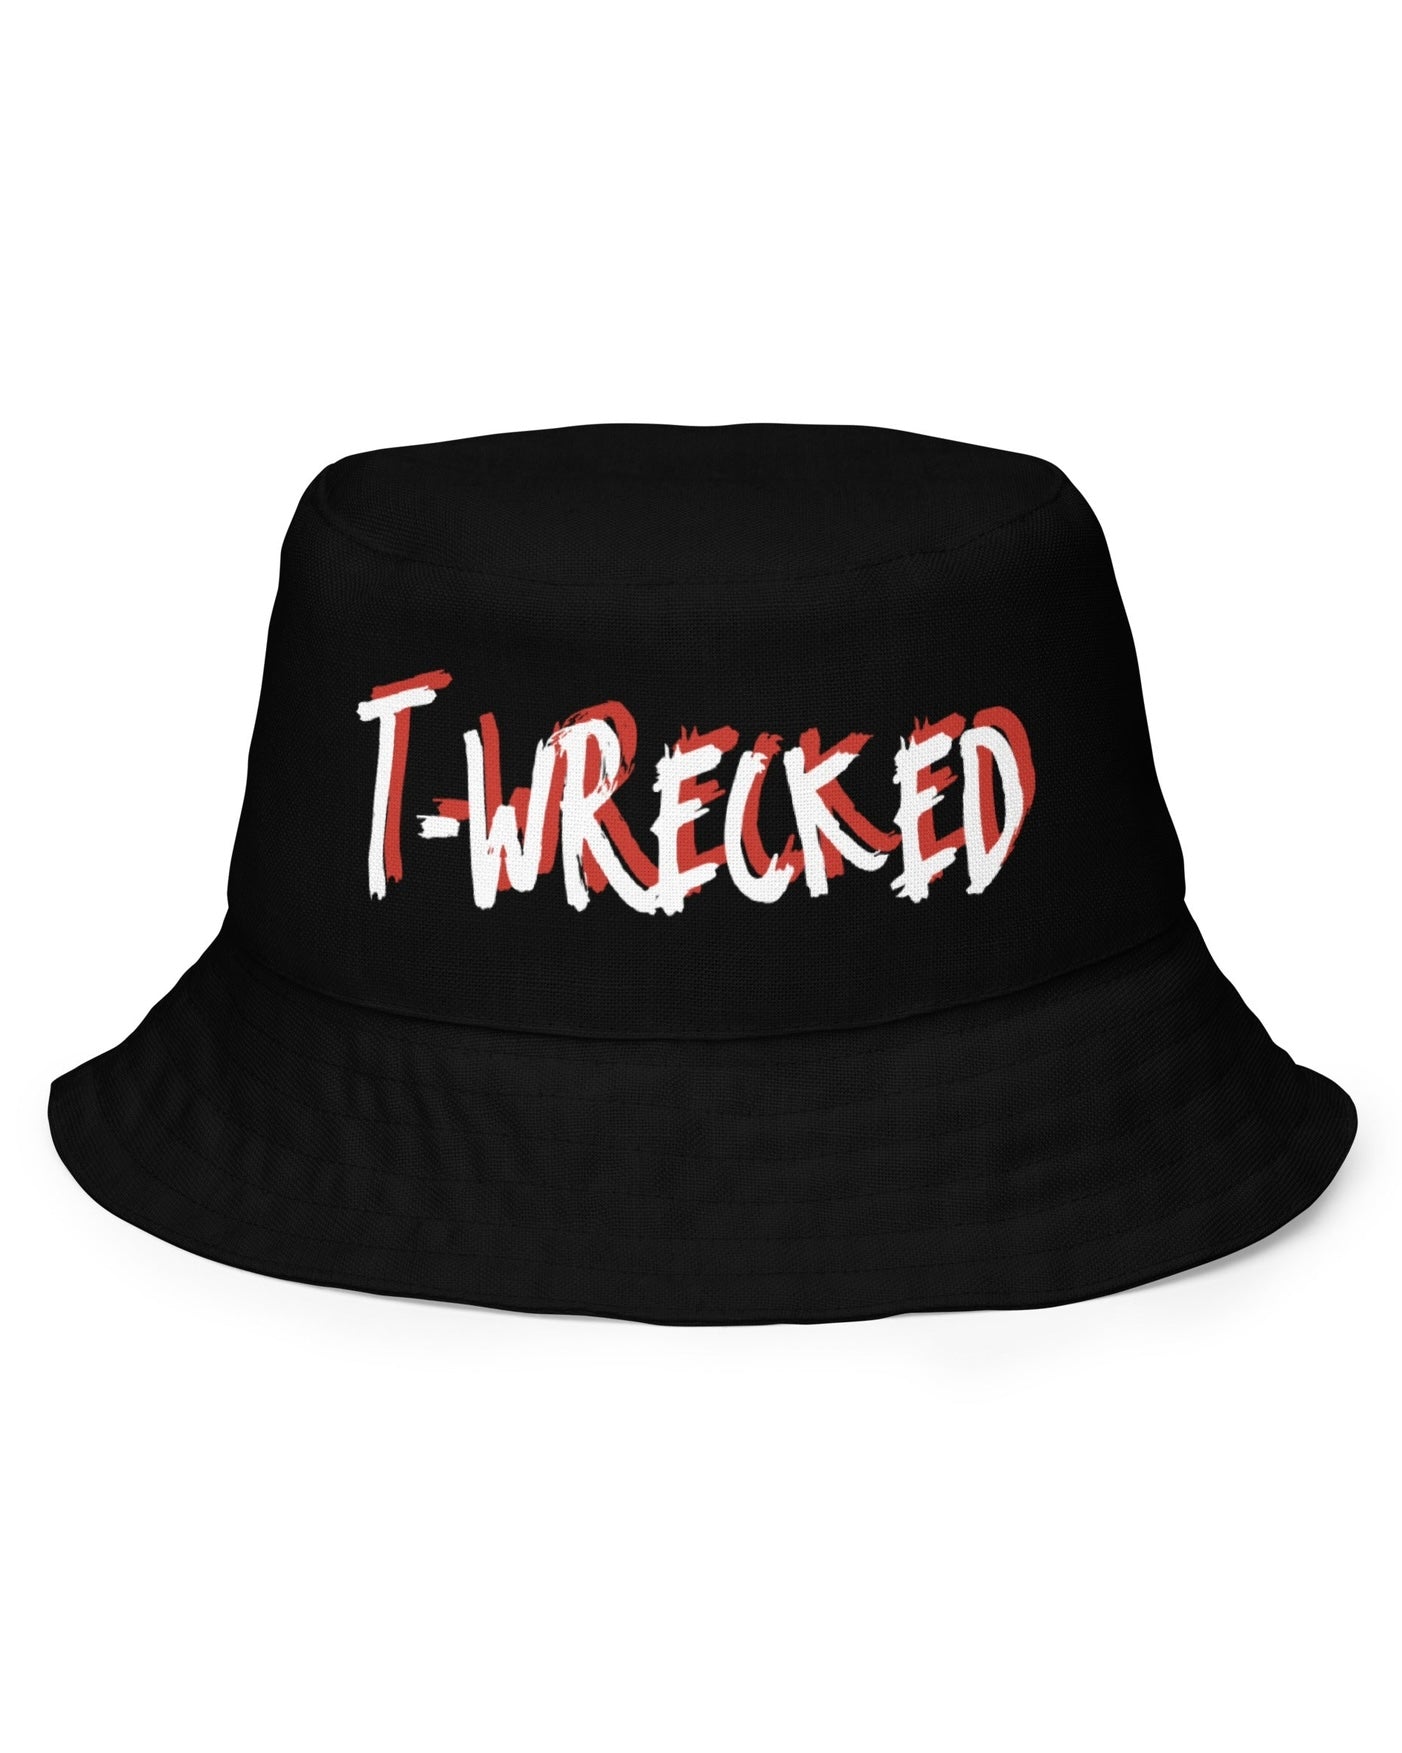 T-Wrecked Reversible Bucket Hat